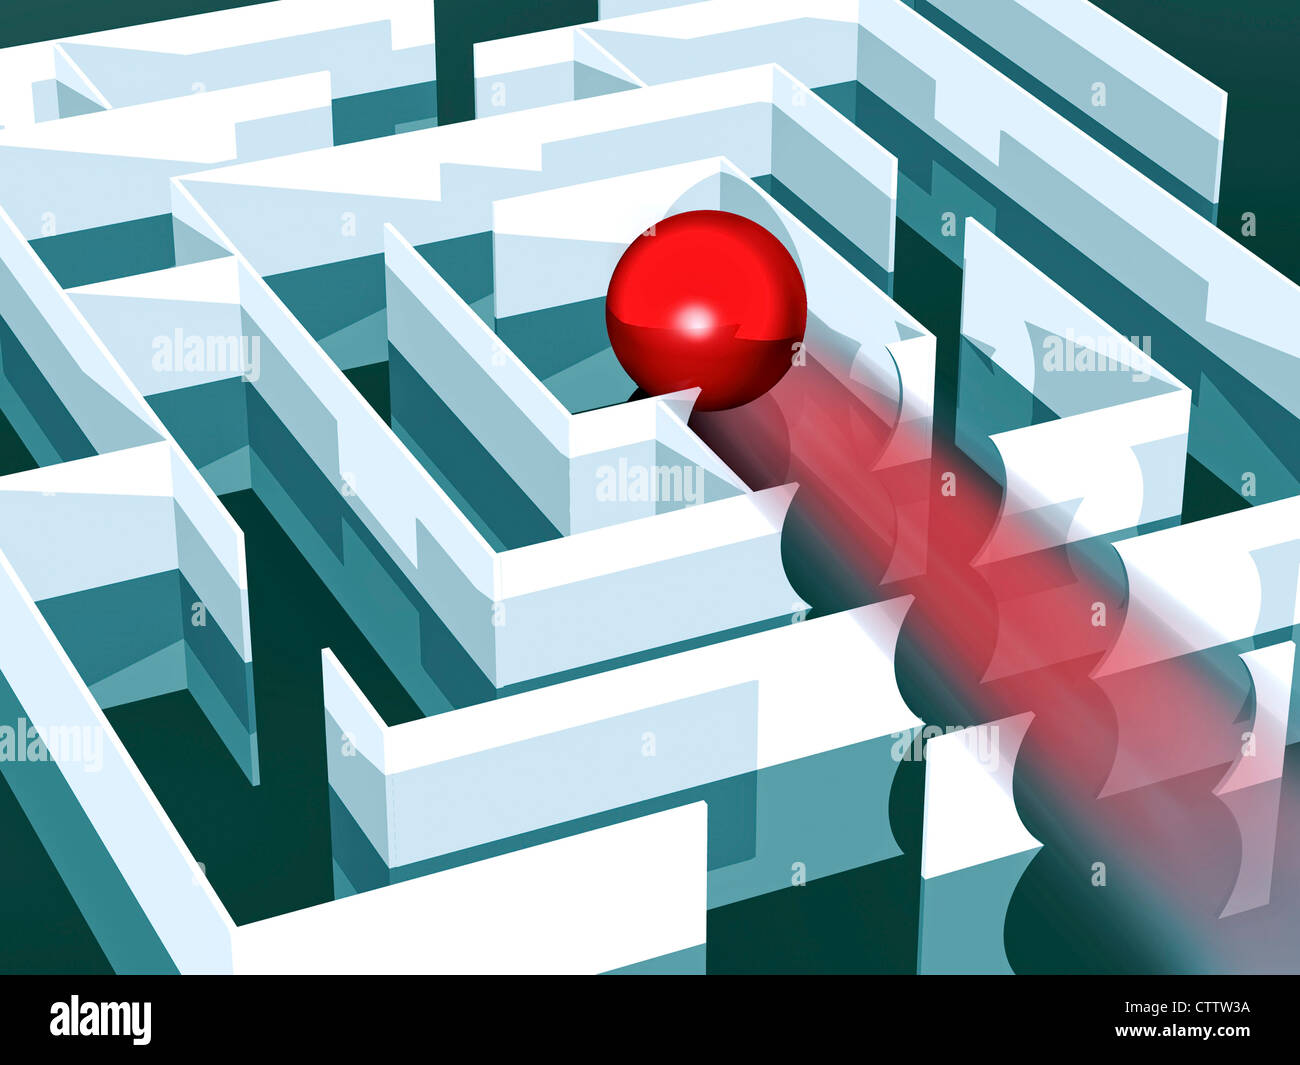 Labyrinth mit roter Kugel, die alle Wände zur Mitte hin durchbricht Banque D'Images